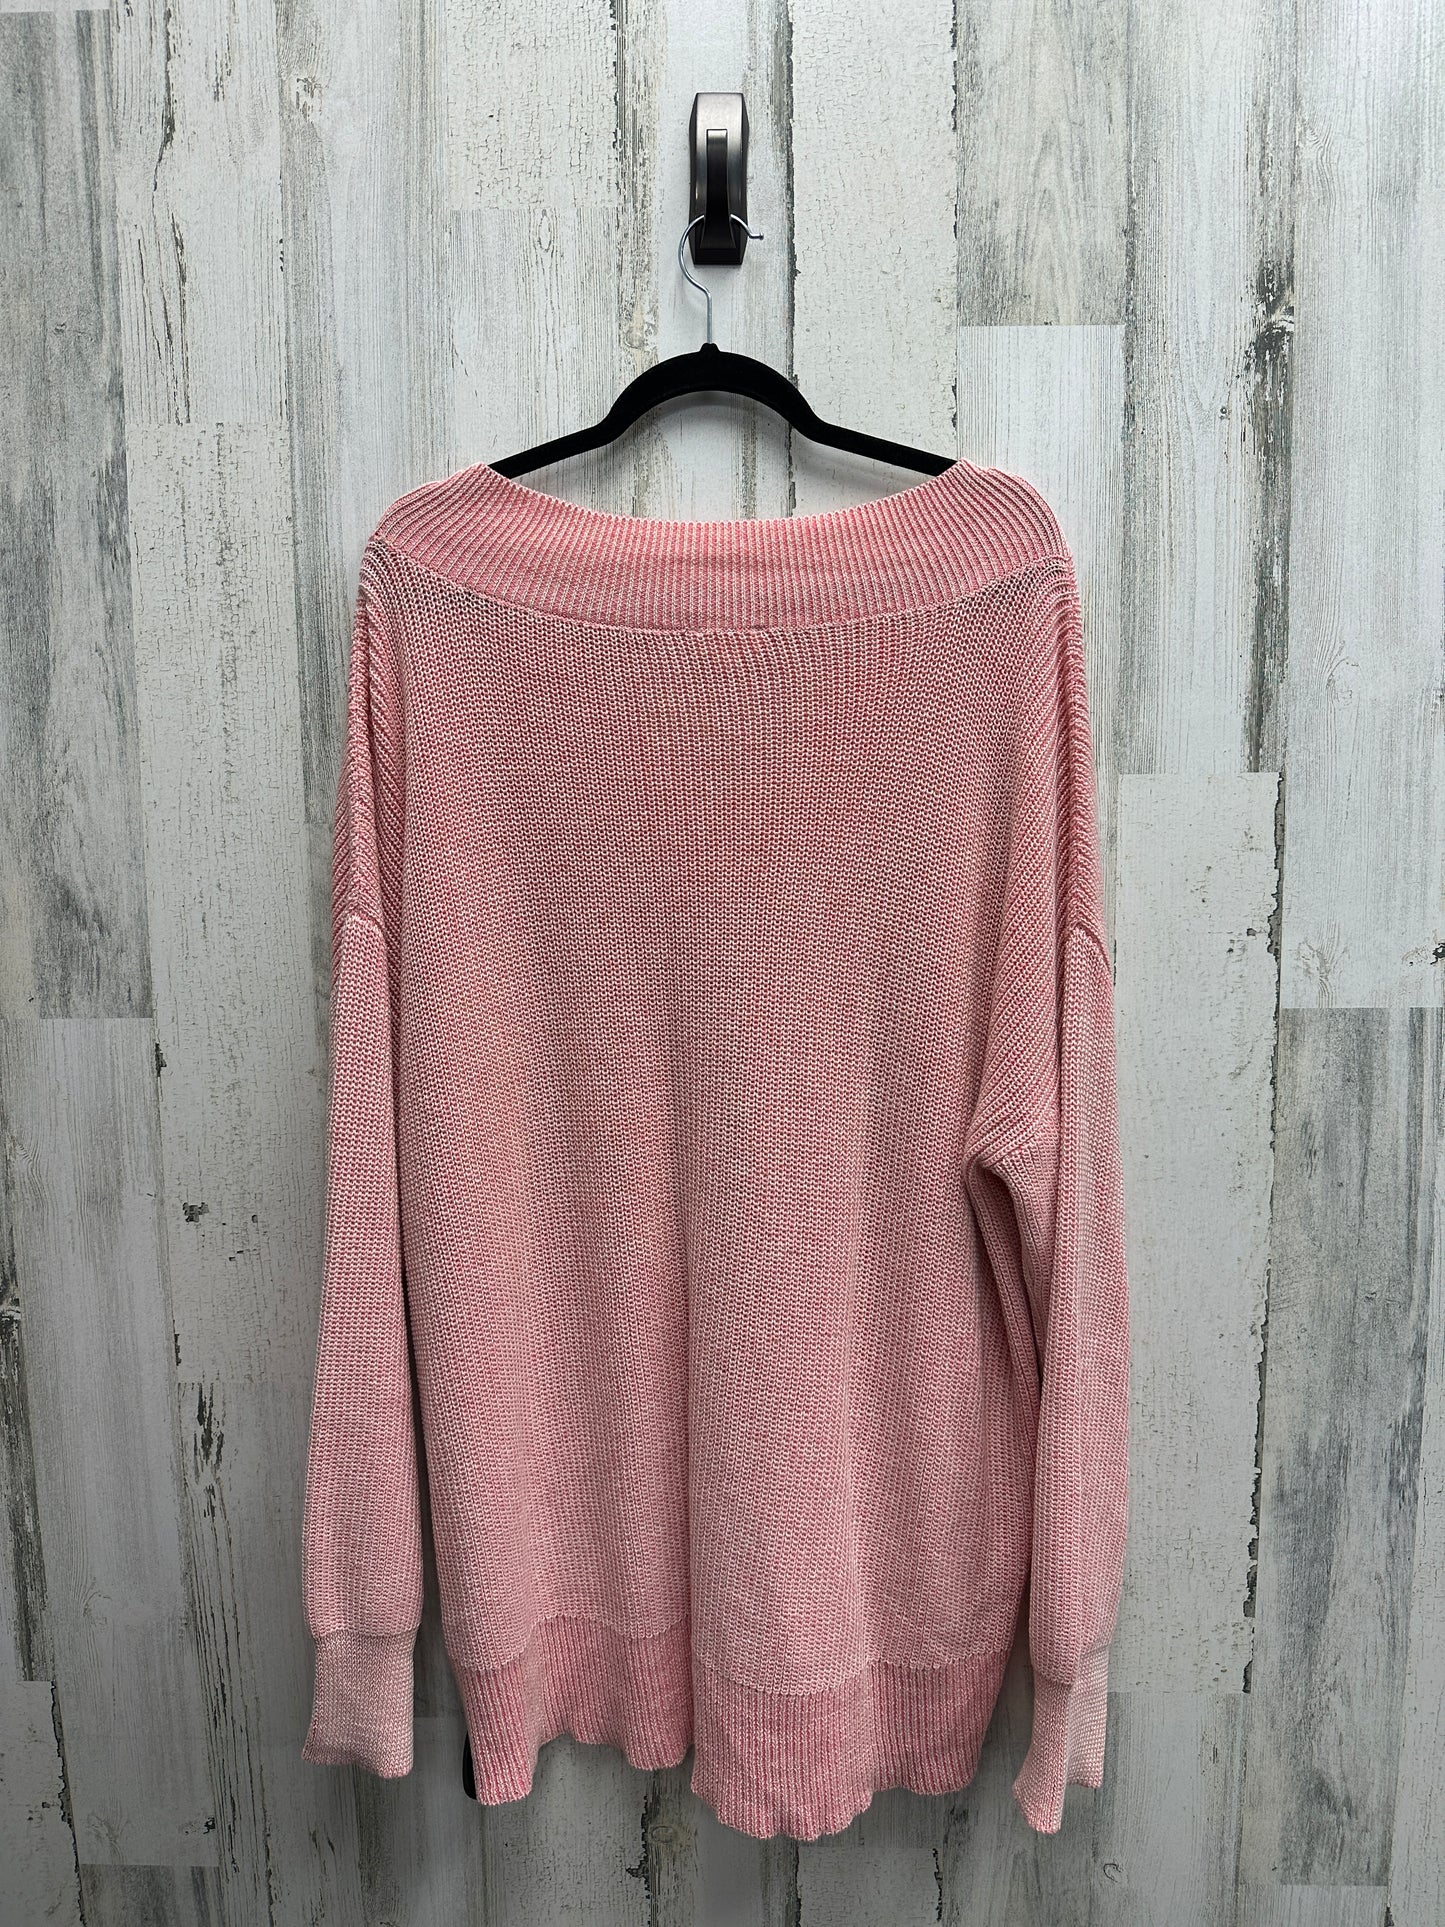 Sweater By Oddi  Size: 2x